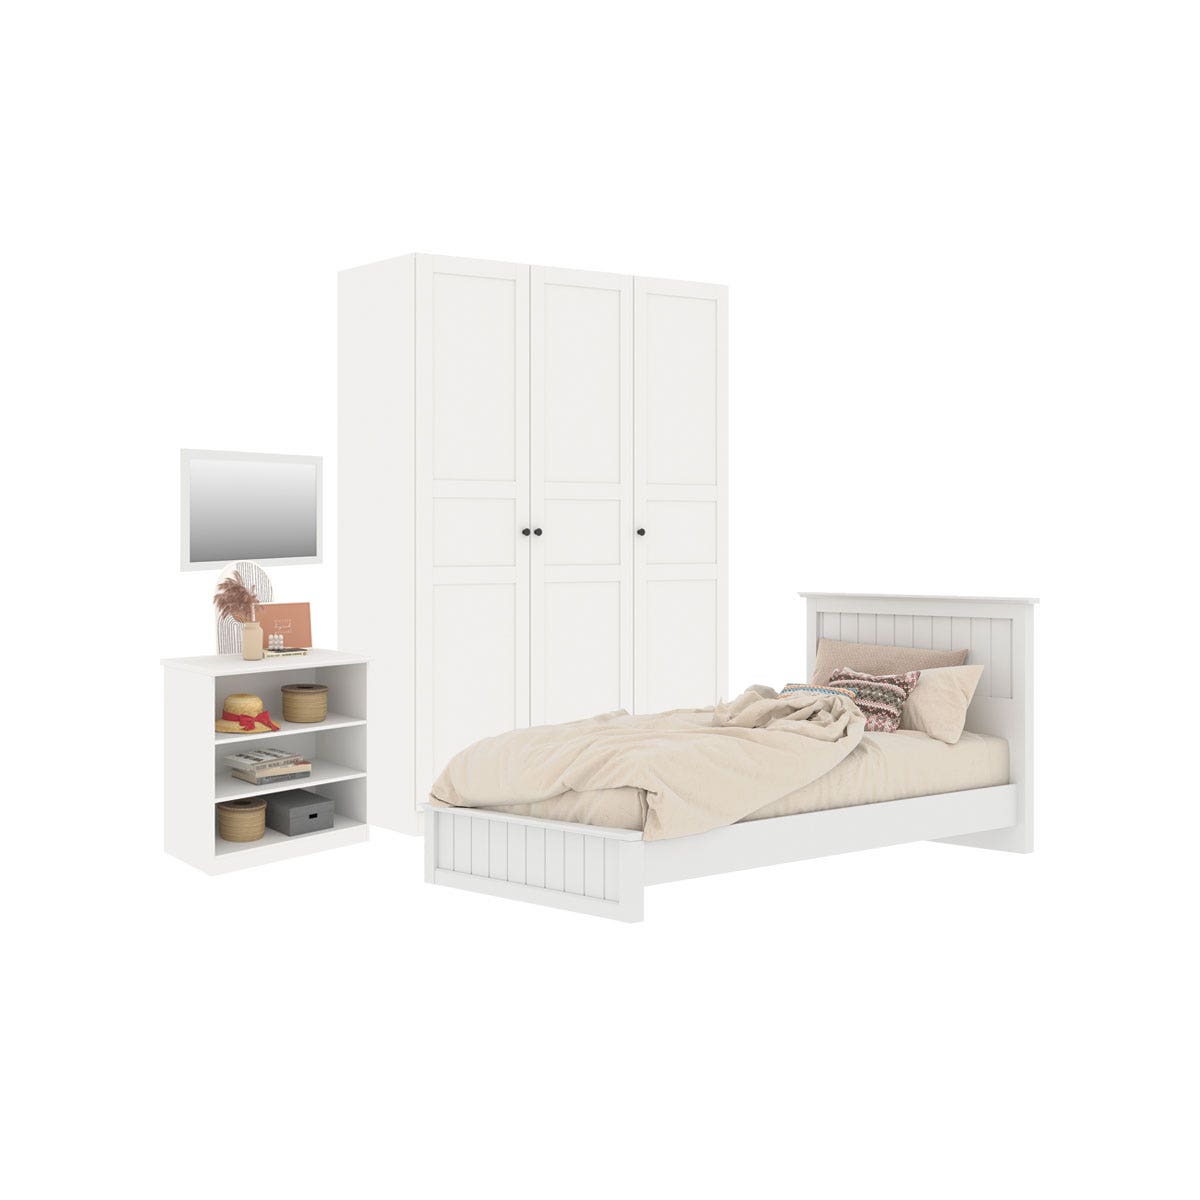 ชุดห้องนอน เตียง 3.5' & ตู้เสื้อผ้า & ตู้เตี้ย รุ่น Moneta พร้อม กระจกแขวน รุ่น Selector สีขาว01